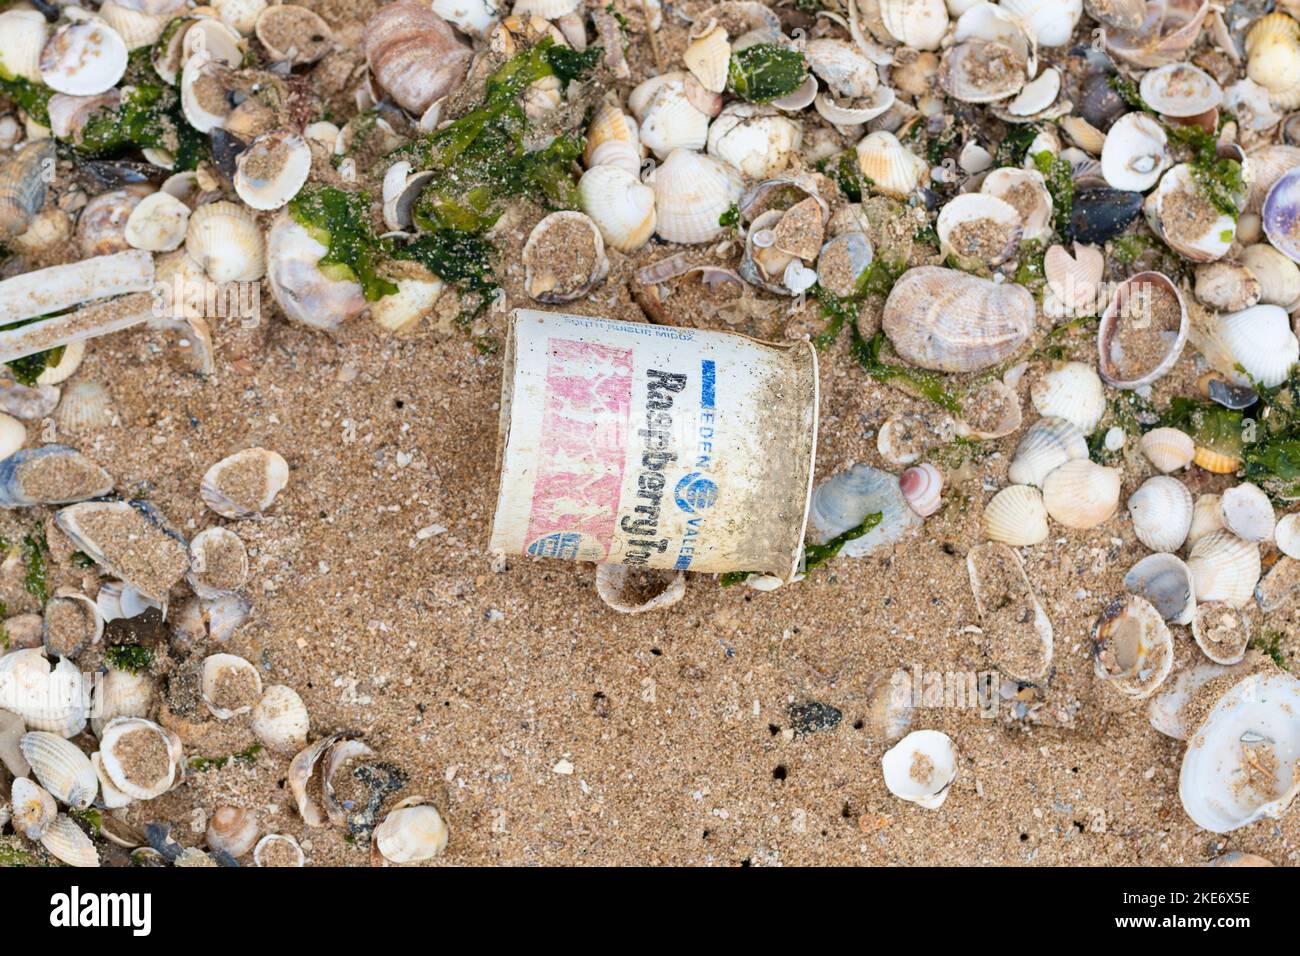 Débris marins - ancien pot de yogourt en plastique à usage unique lavé sur la plage - Kent, Angleterre, Royaume-Uni Banque D'Images